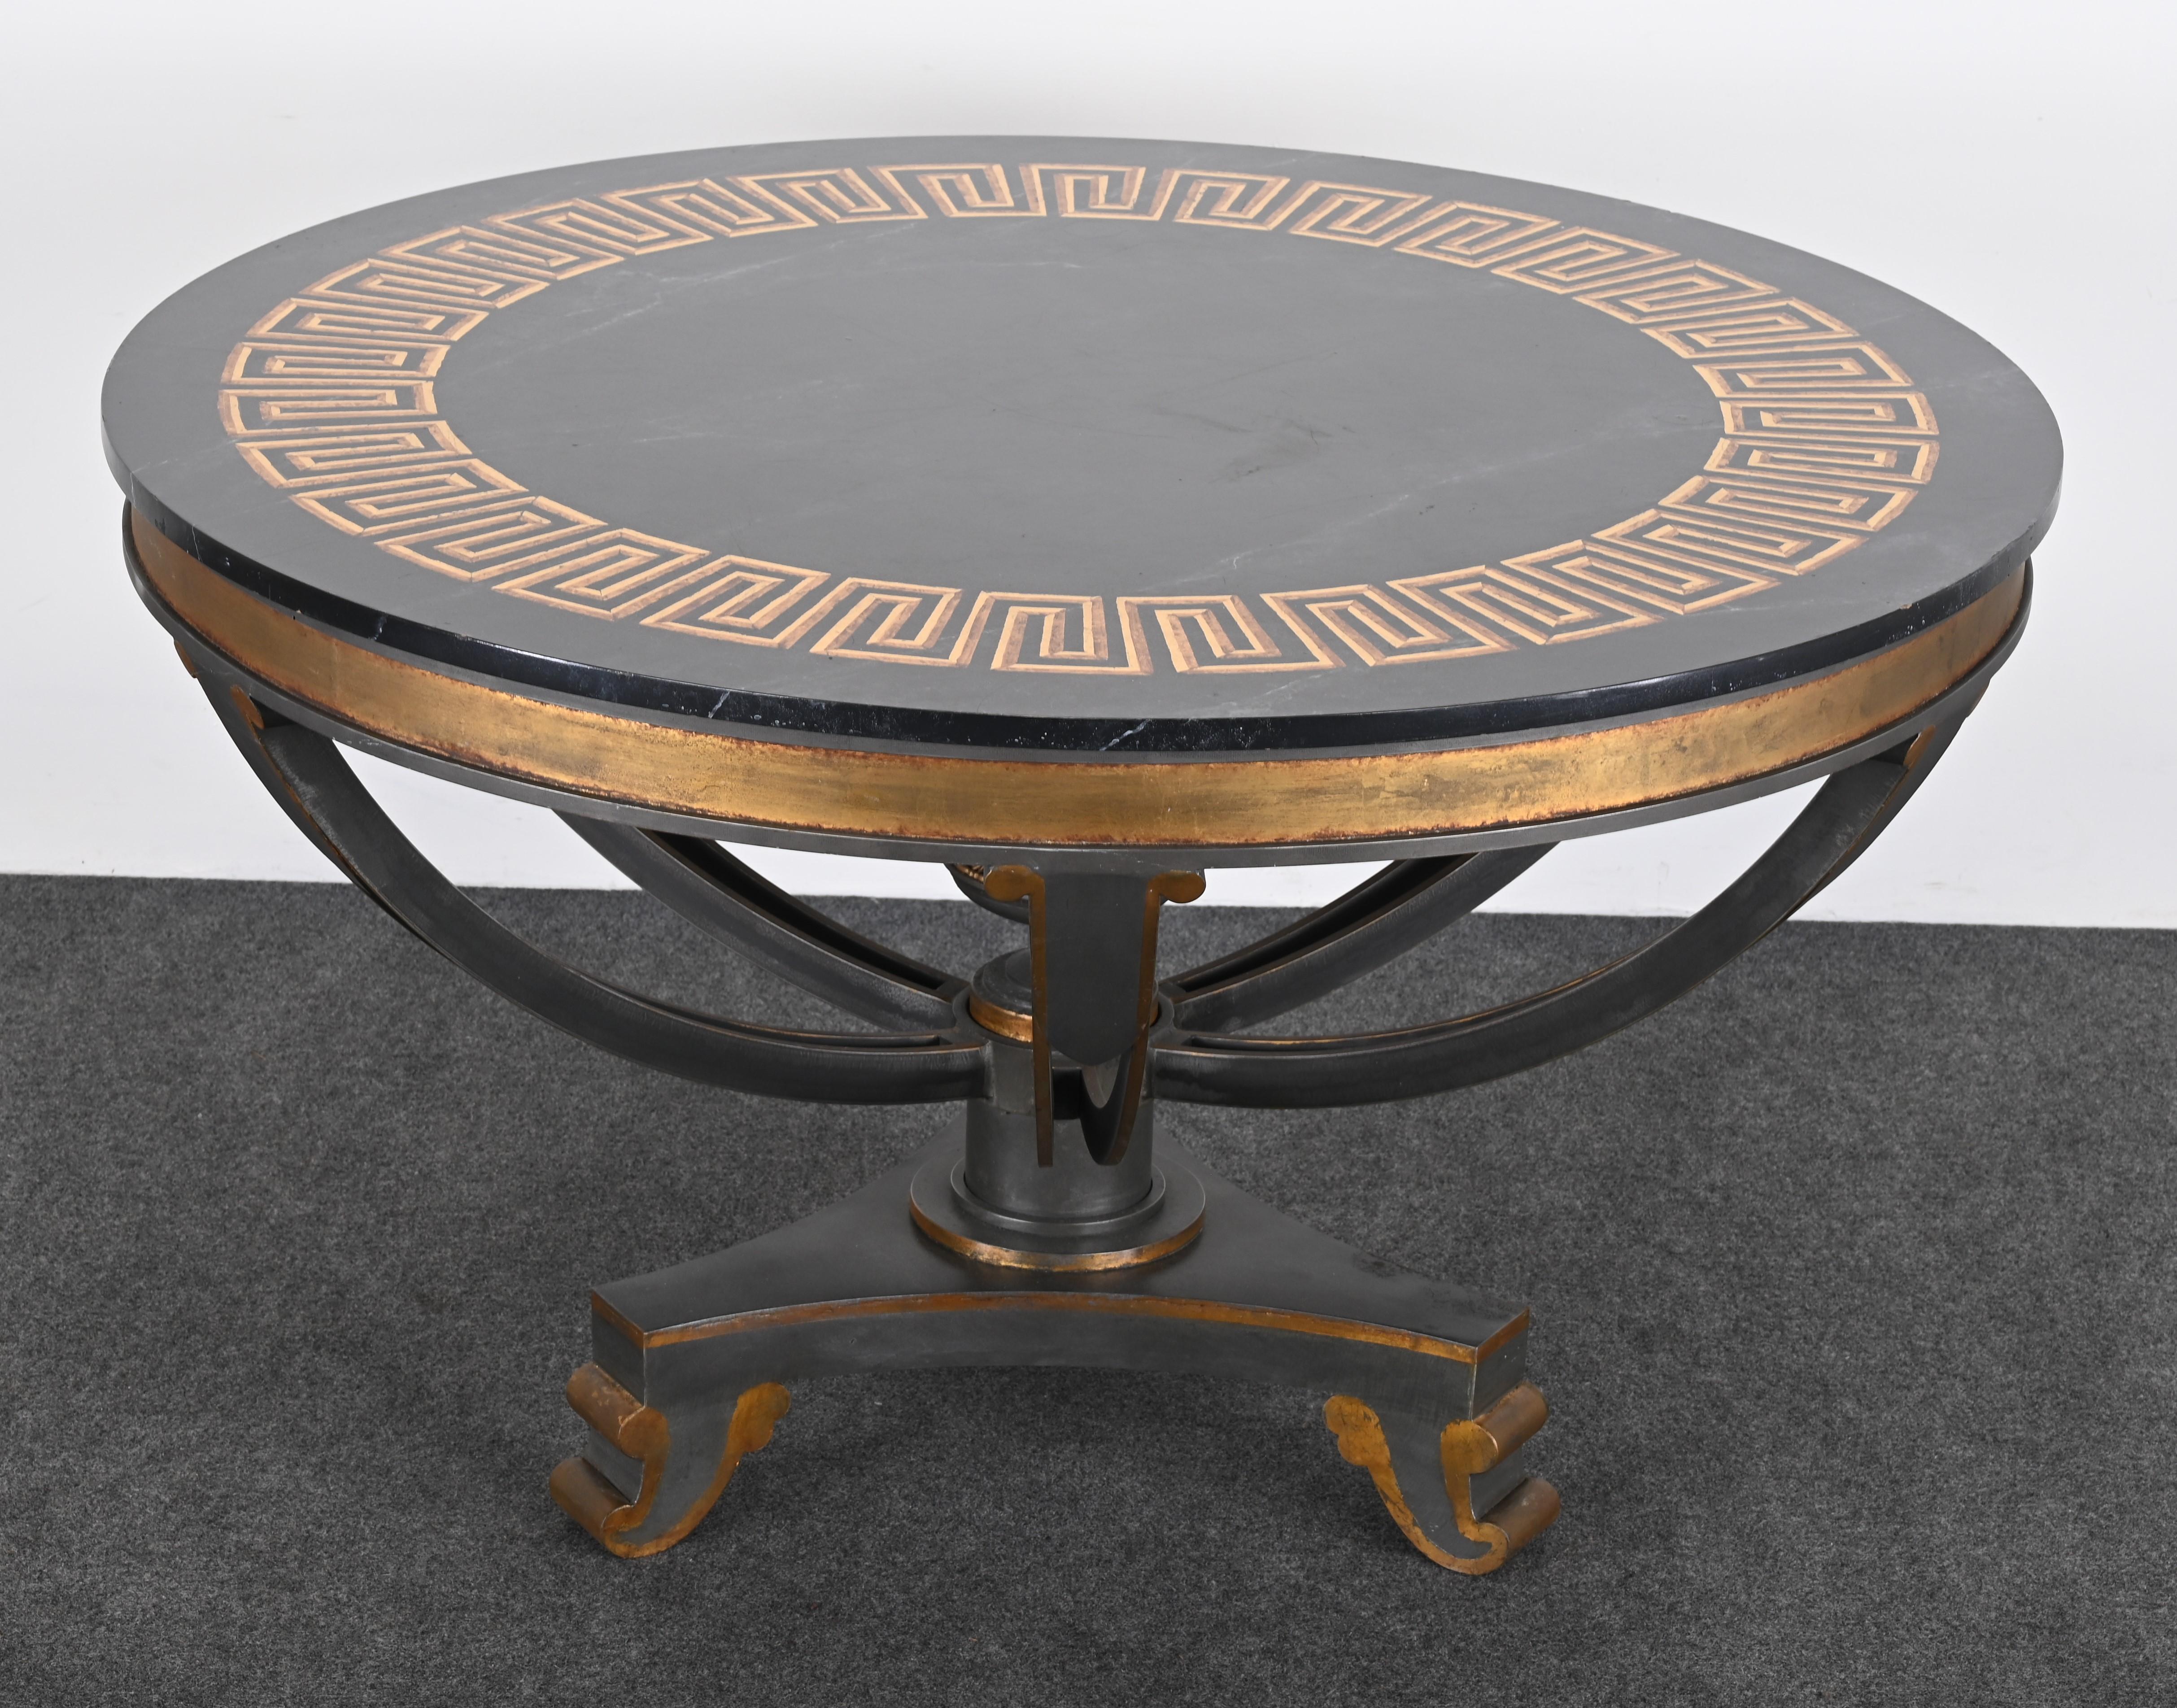 Une table centrale ou une table de salle à manger monumentale fabriquée par Niermann Weeks, réputé pour son savoir-faire unique et son design sur mesure. Cette magnifique table provient d'une propriété haut de gamme. La table est conçue sur mesure